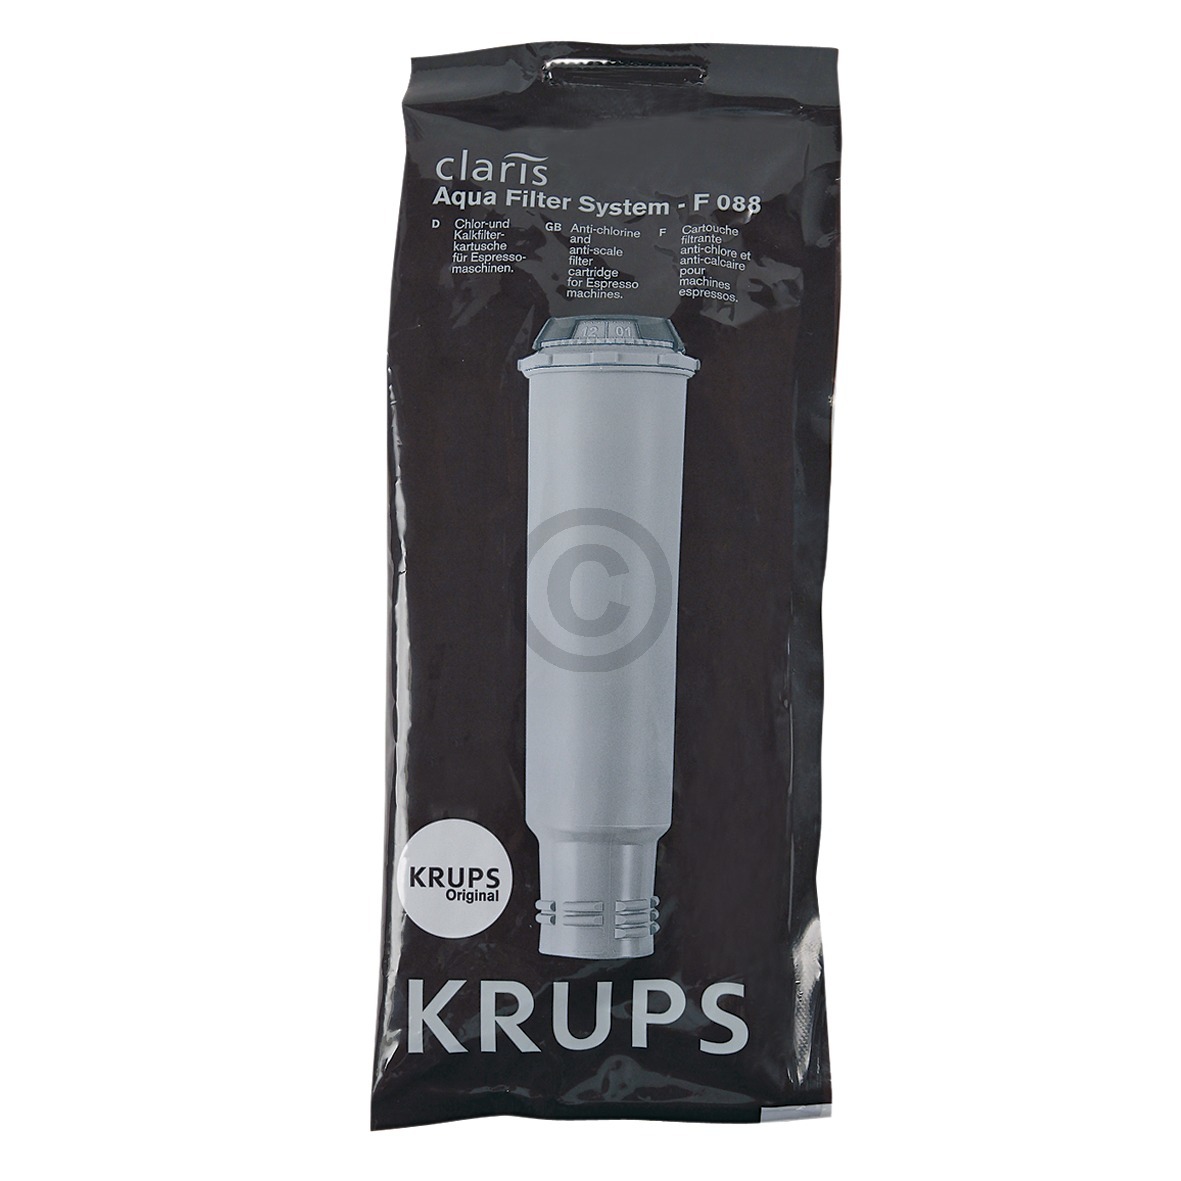 Wasserfilter KRUPS F088 für Kaffeemaschine